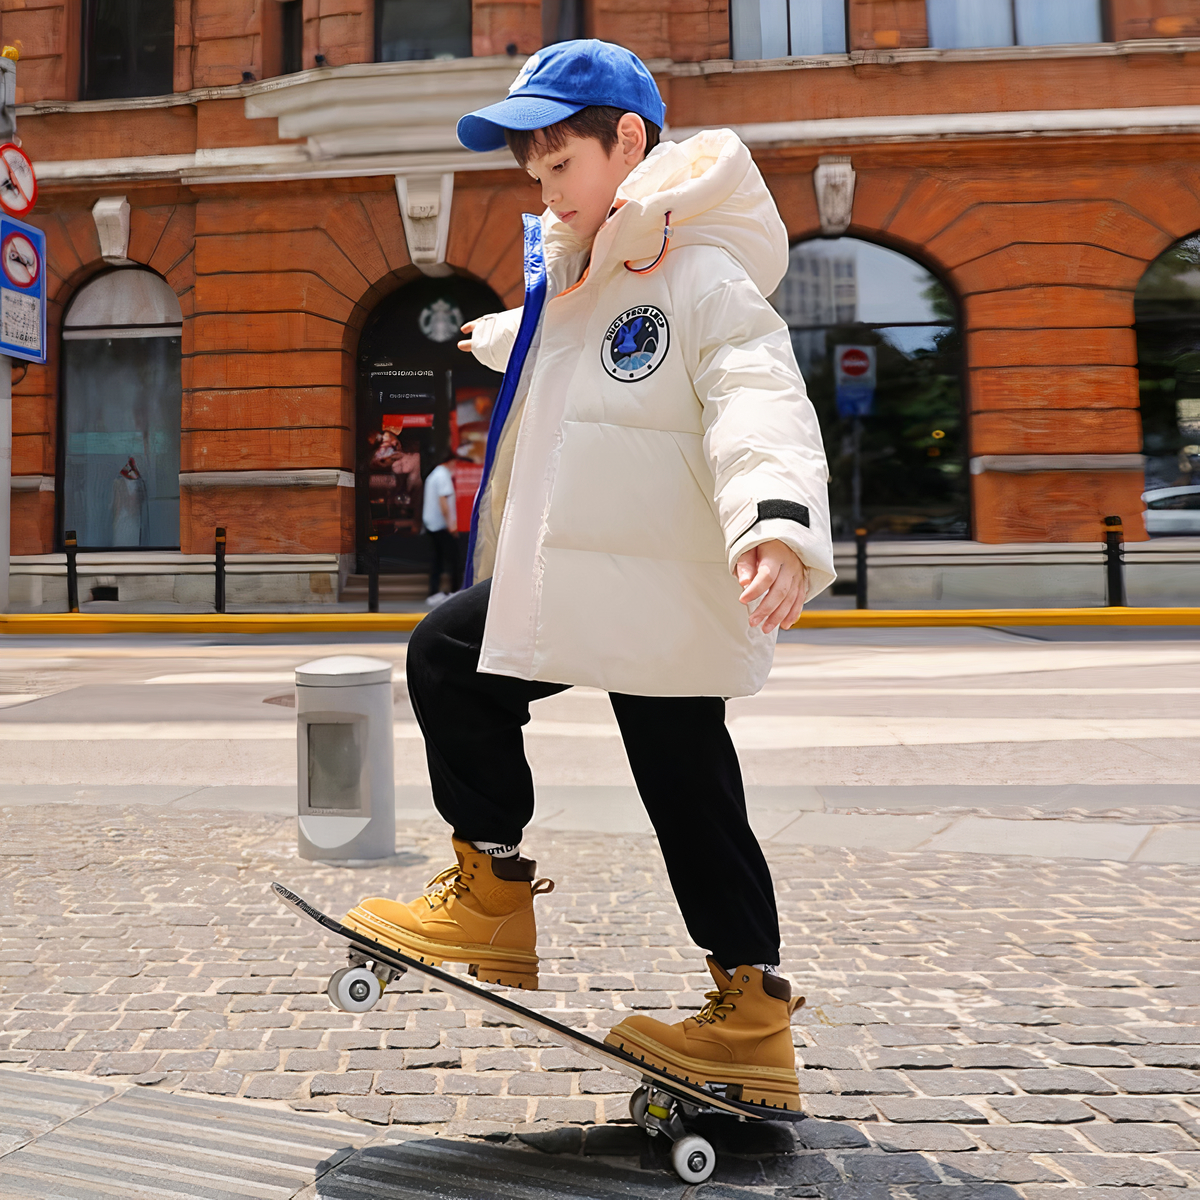 On voit un adolescent avec une casquette bleue qui fait du skate-board dans une rue. Il porte une doudoune blanche avec une capuche qui a l'air très chaude.